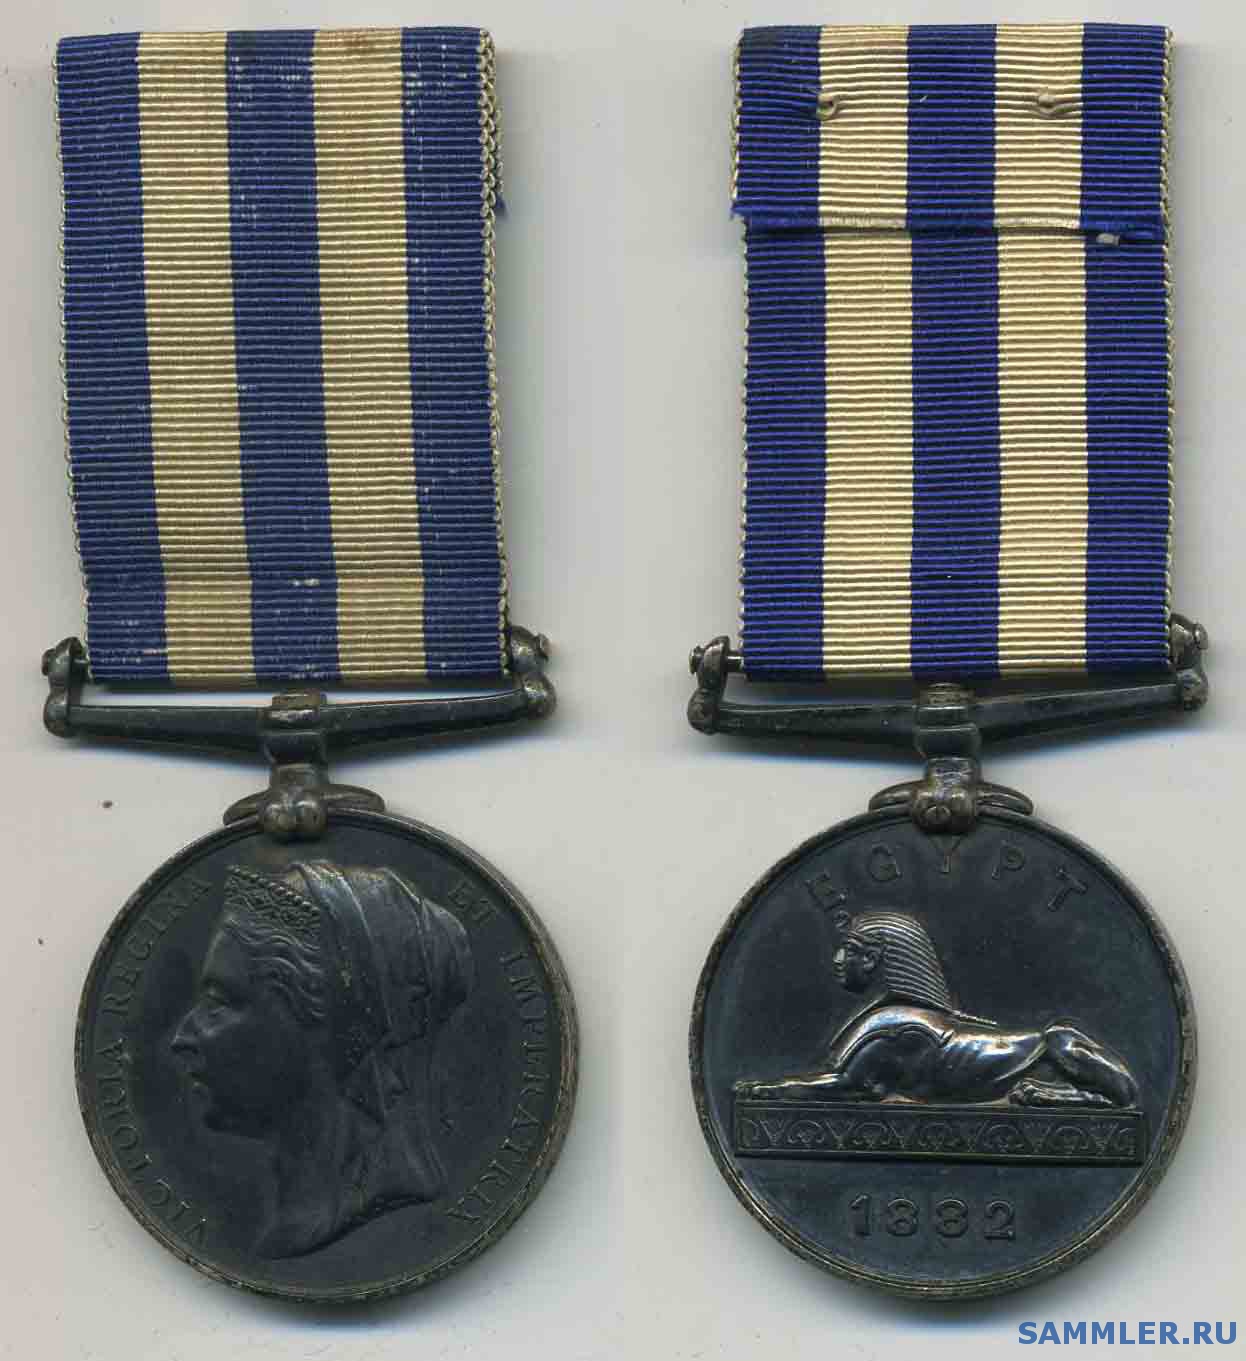 Egypt_Medal_1882.jpg